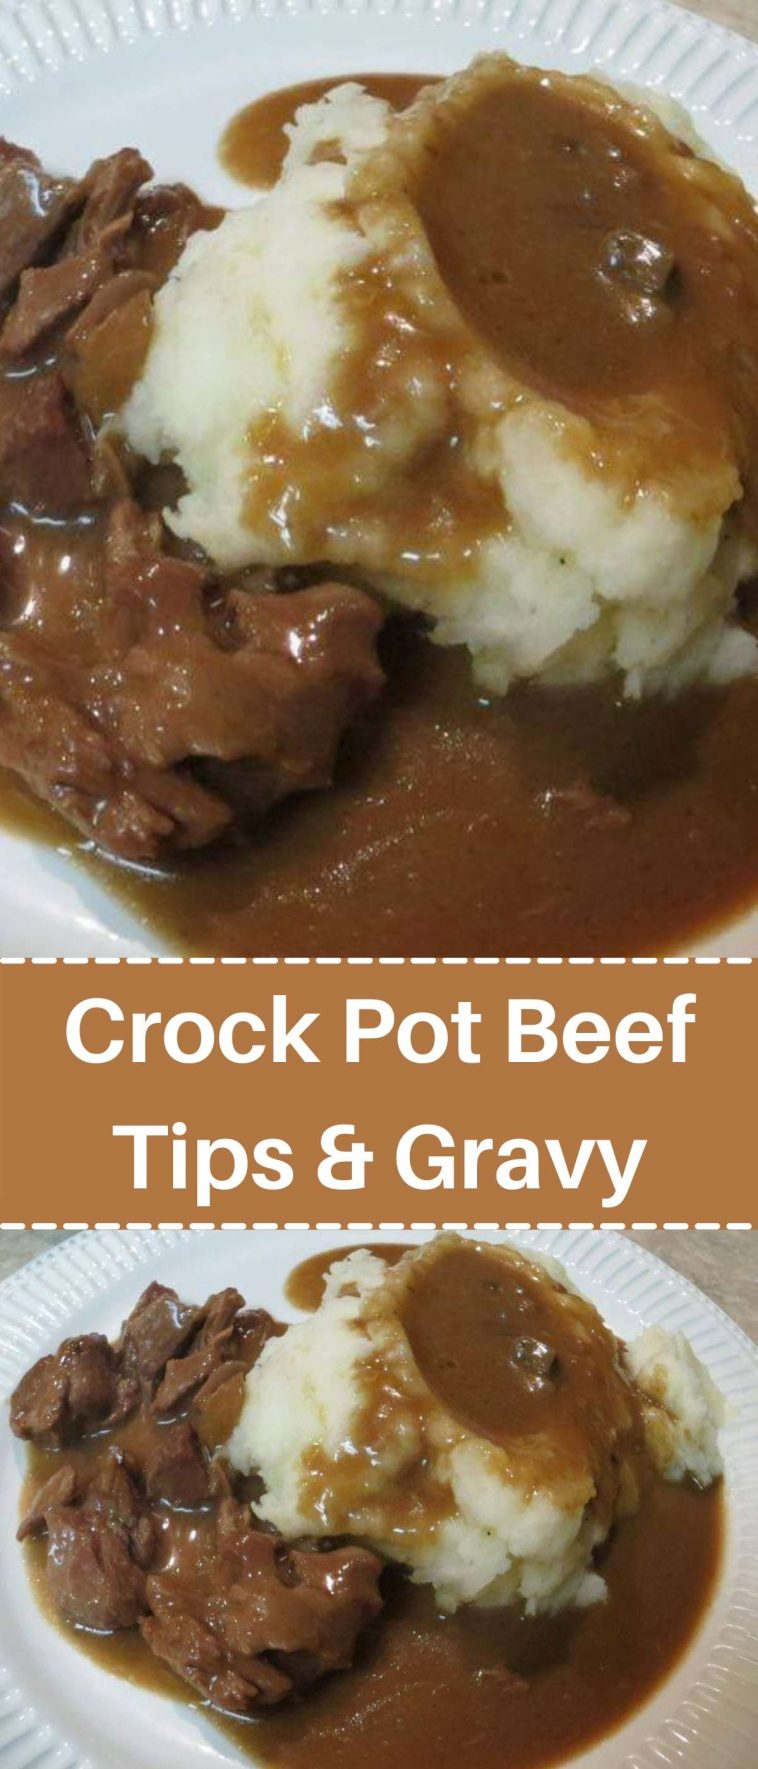 Crock Pot Beef Tips & Gravy